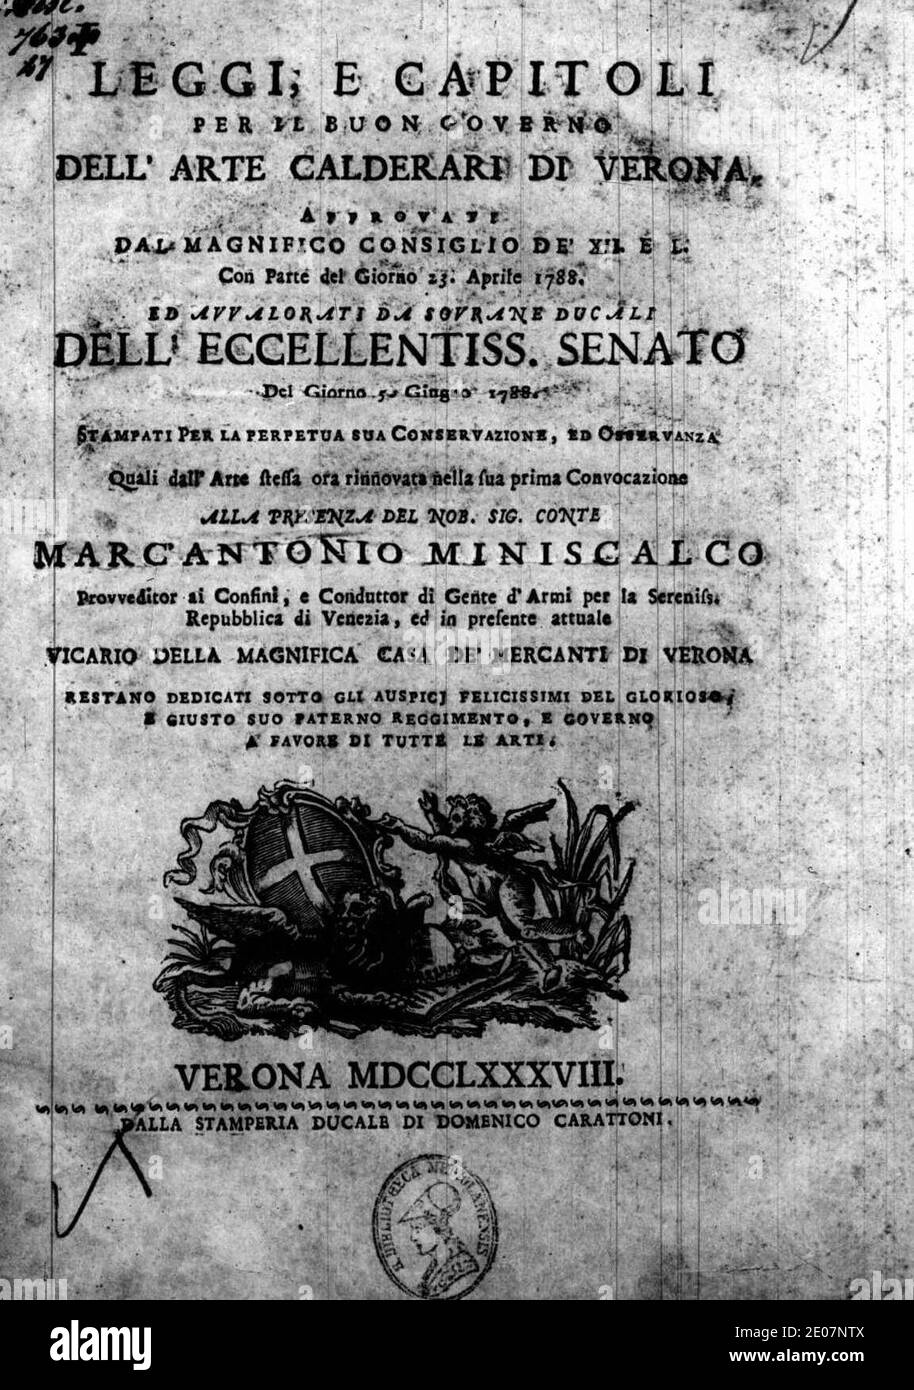 Leggi, e capitoli per il buon governo dell'arte calderari di Verona, 1788 – BEIC 15157127. Stock Photo